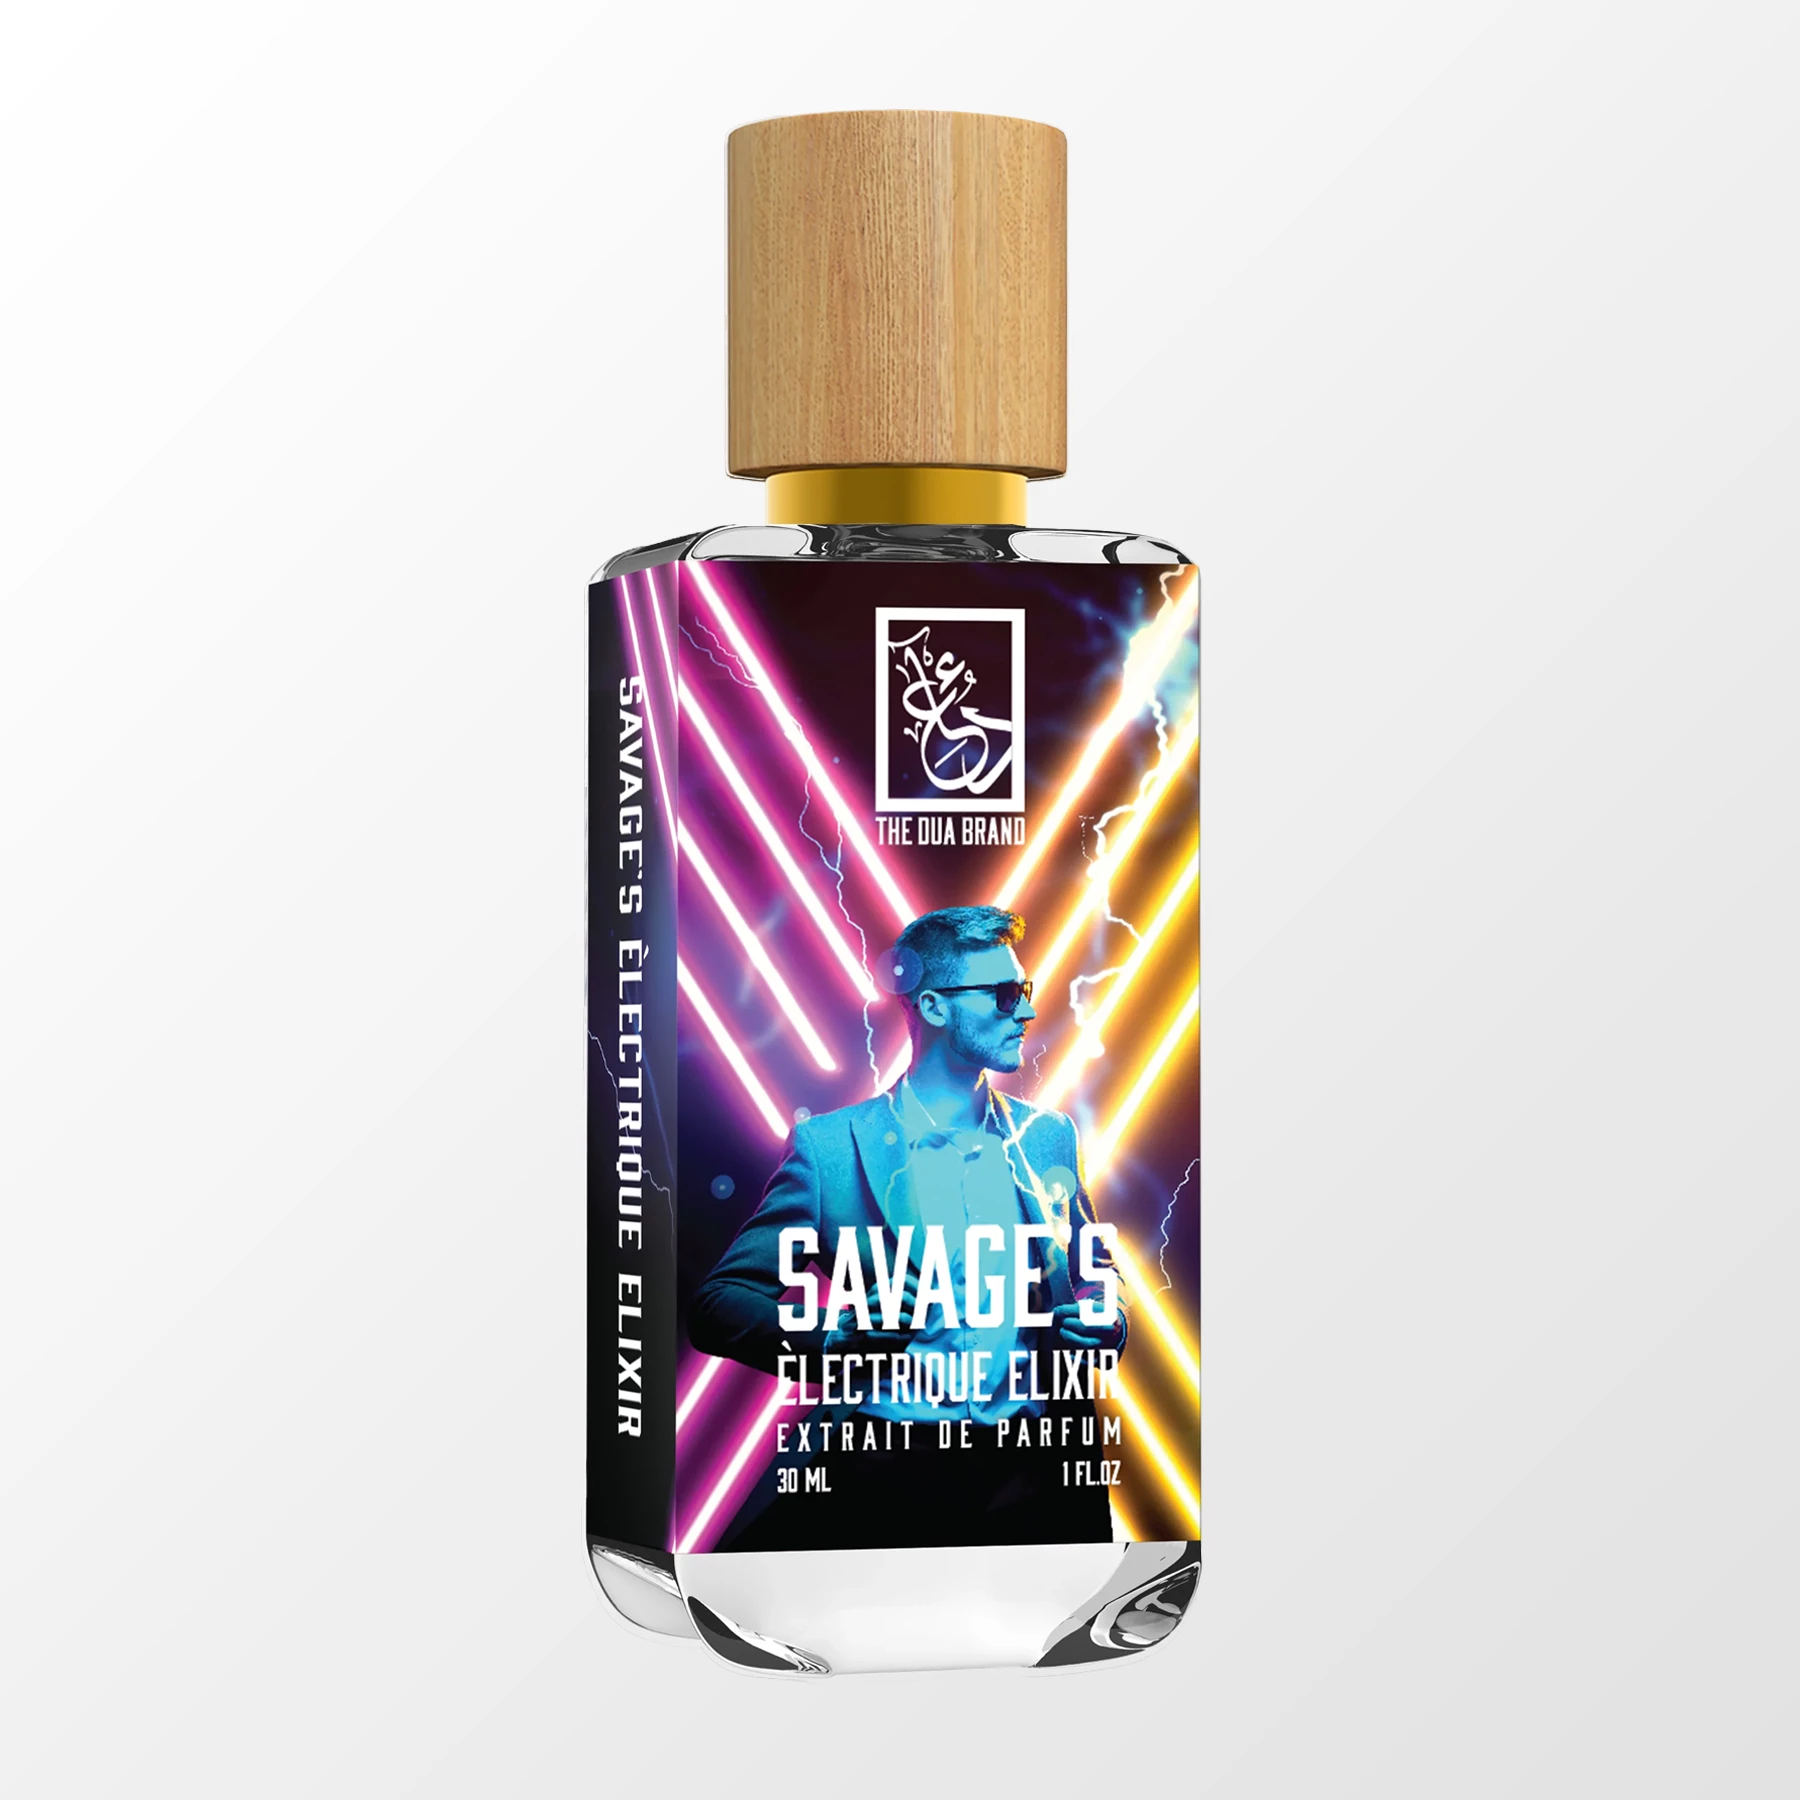 Savage's Èlectrique Elixir - DUA FRAGRANCES - Aromatic Spicy - Masculine  Perfume - 34ml/1.1 FL OZ - Extrait De Parfum